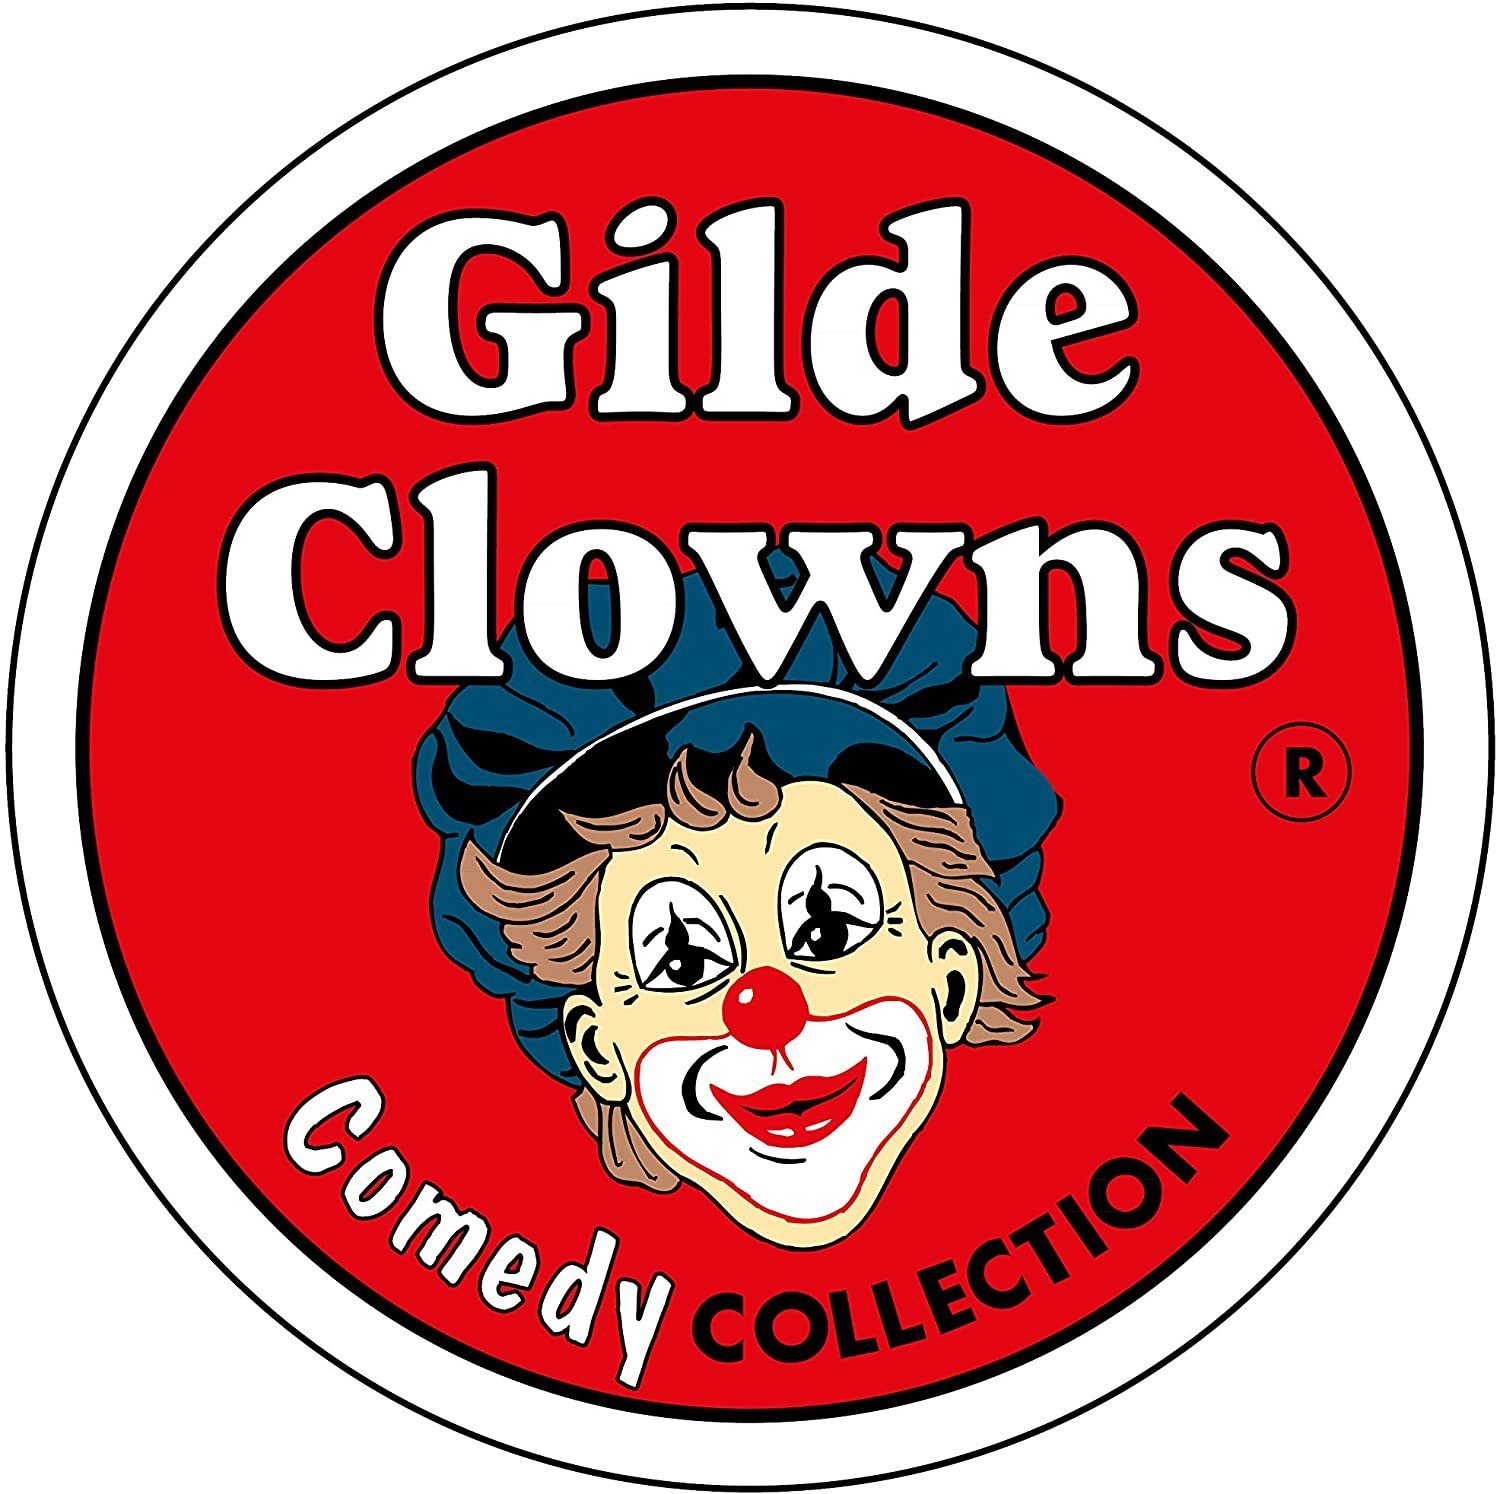 gross Sammelfigur Clown Gildeclowns - Dekofigur - - GILDE Big Indoor Boy Indoor Dekofigur